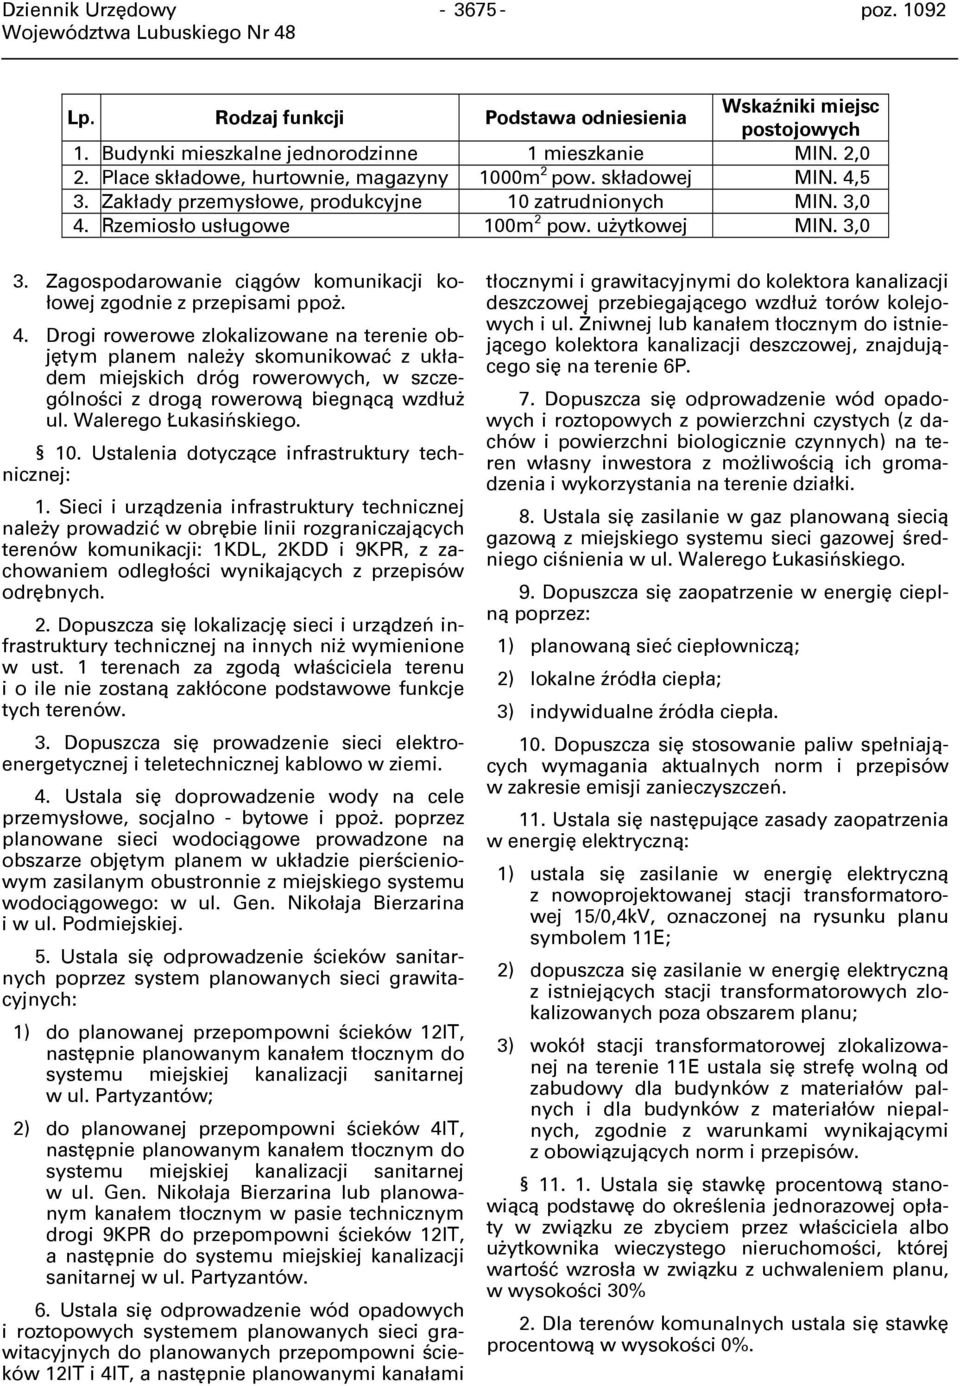 Zagospodarowanie ciągów komunikacji kołowej zgodnie z przepisami ppoż. 4.